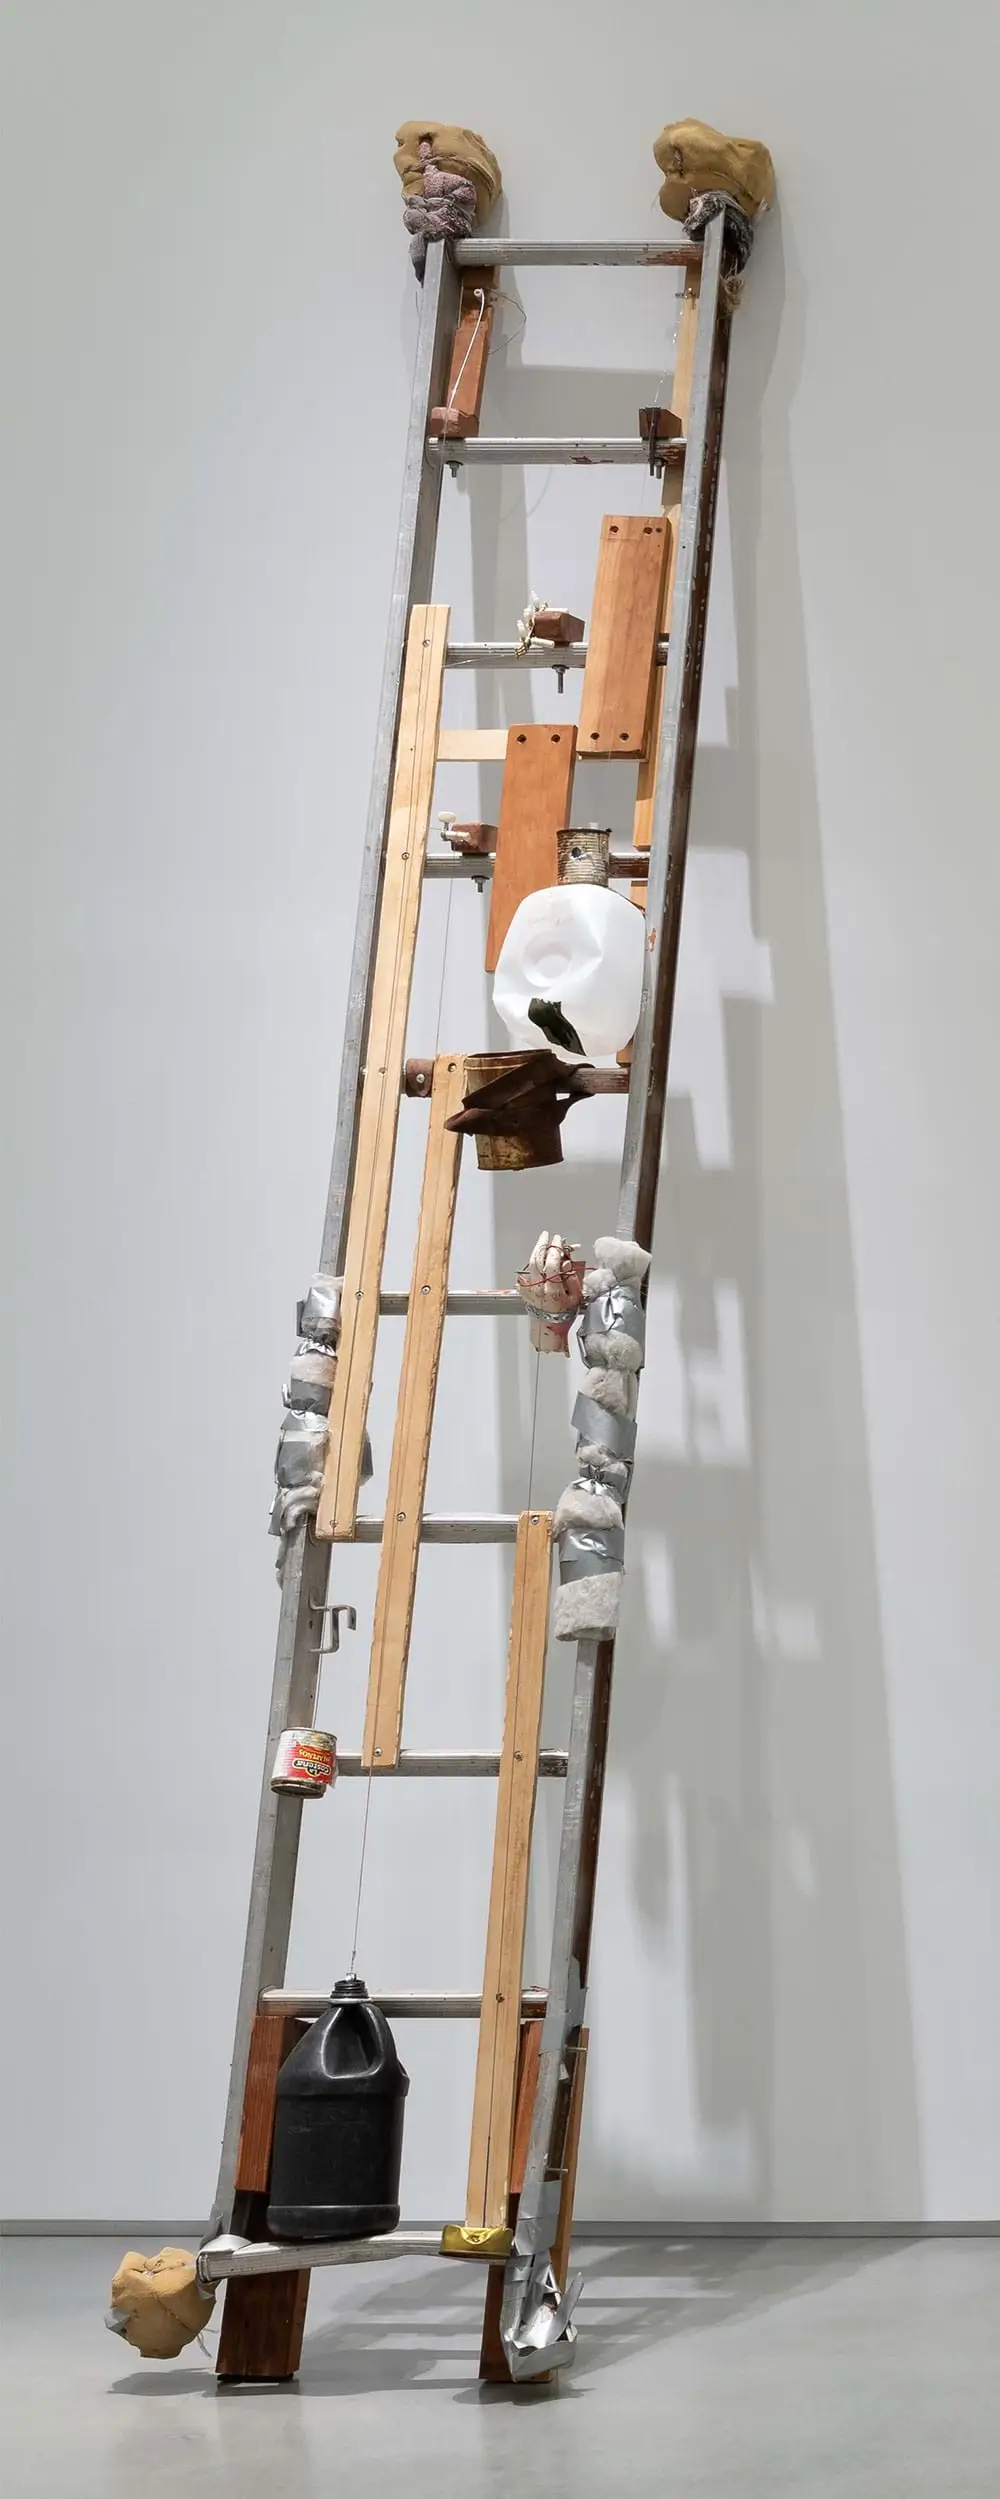 Sirvientes y Escaleras / Servants and Ladders, 2015